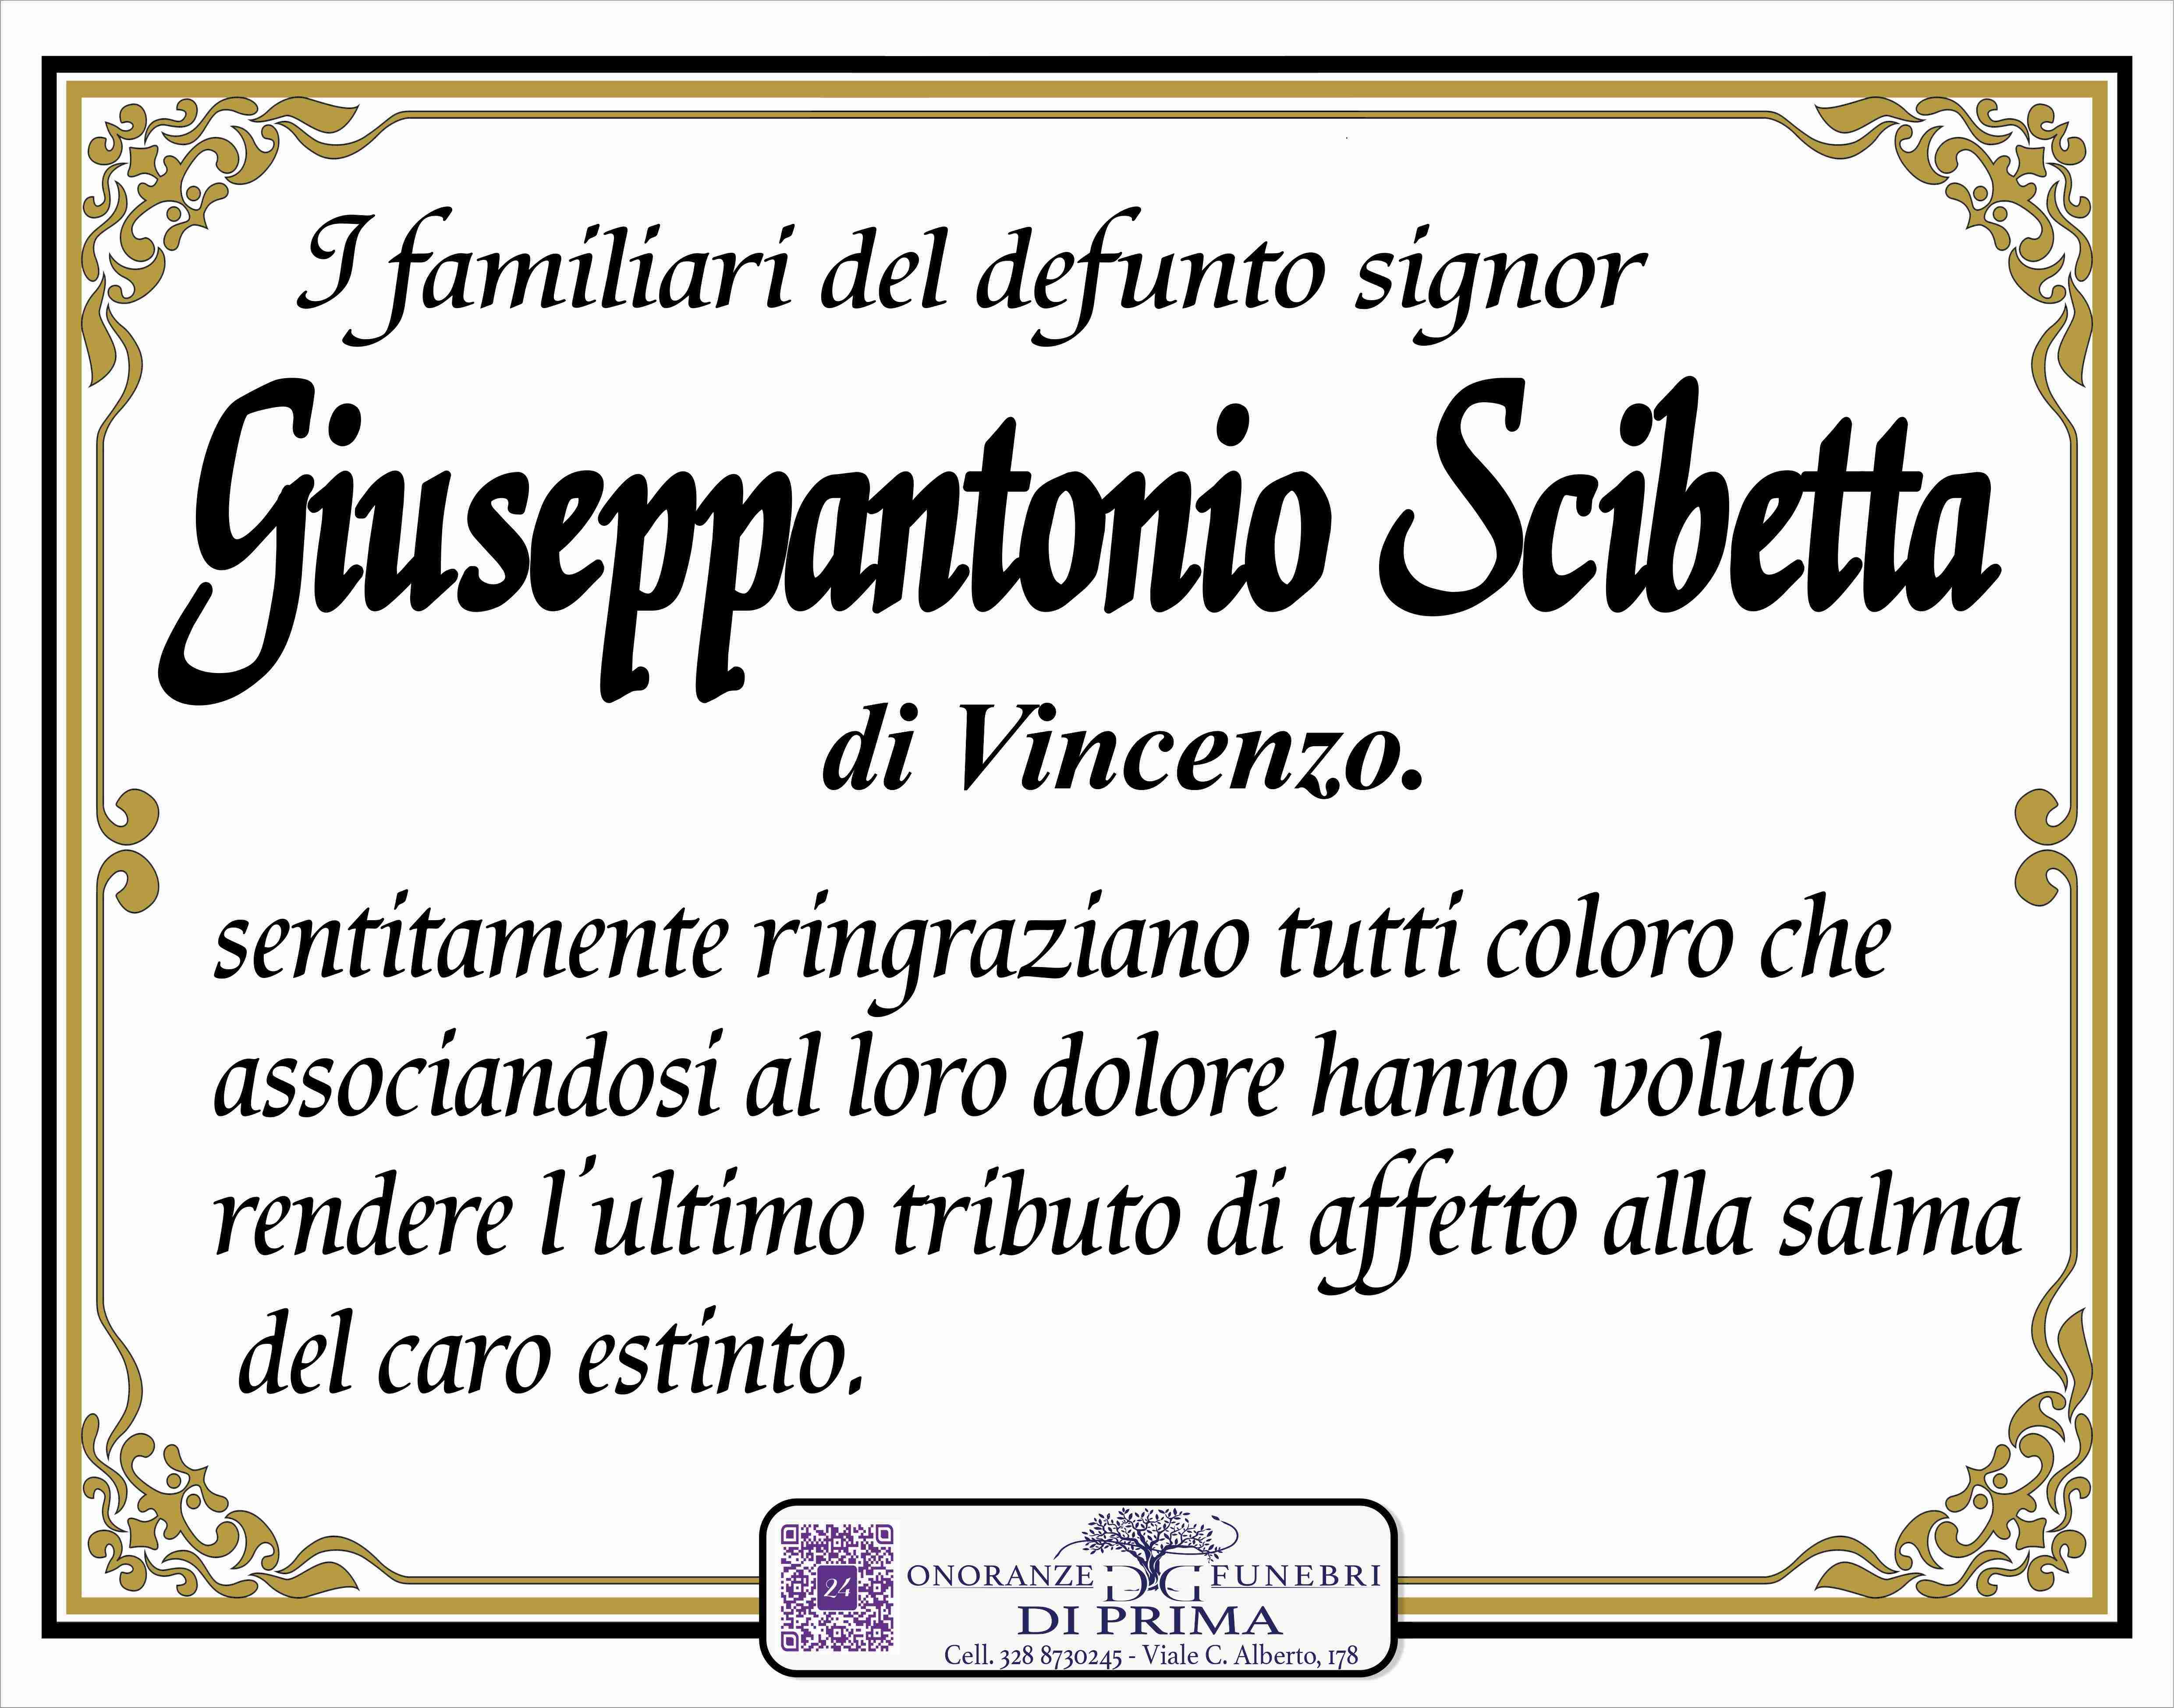 Giuseppantonio Scibetta